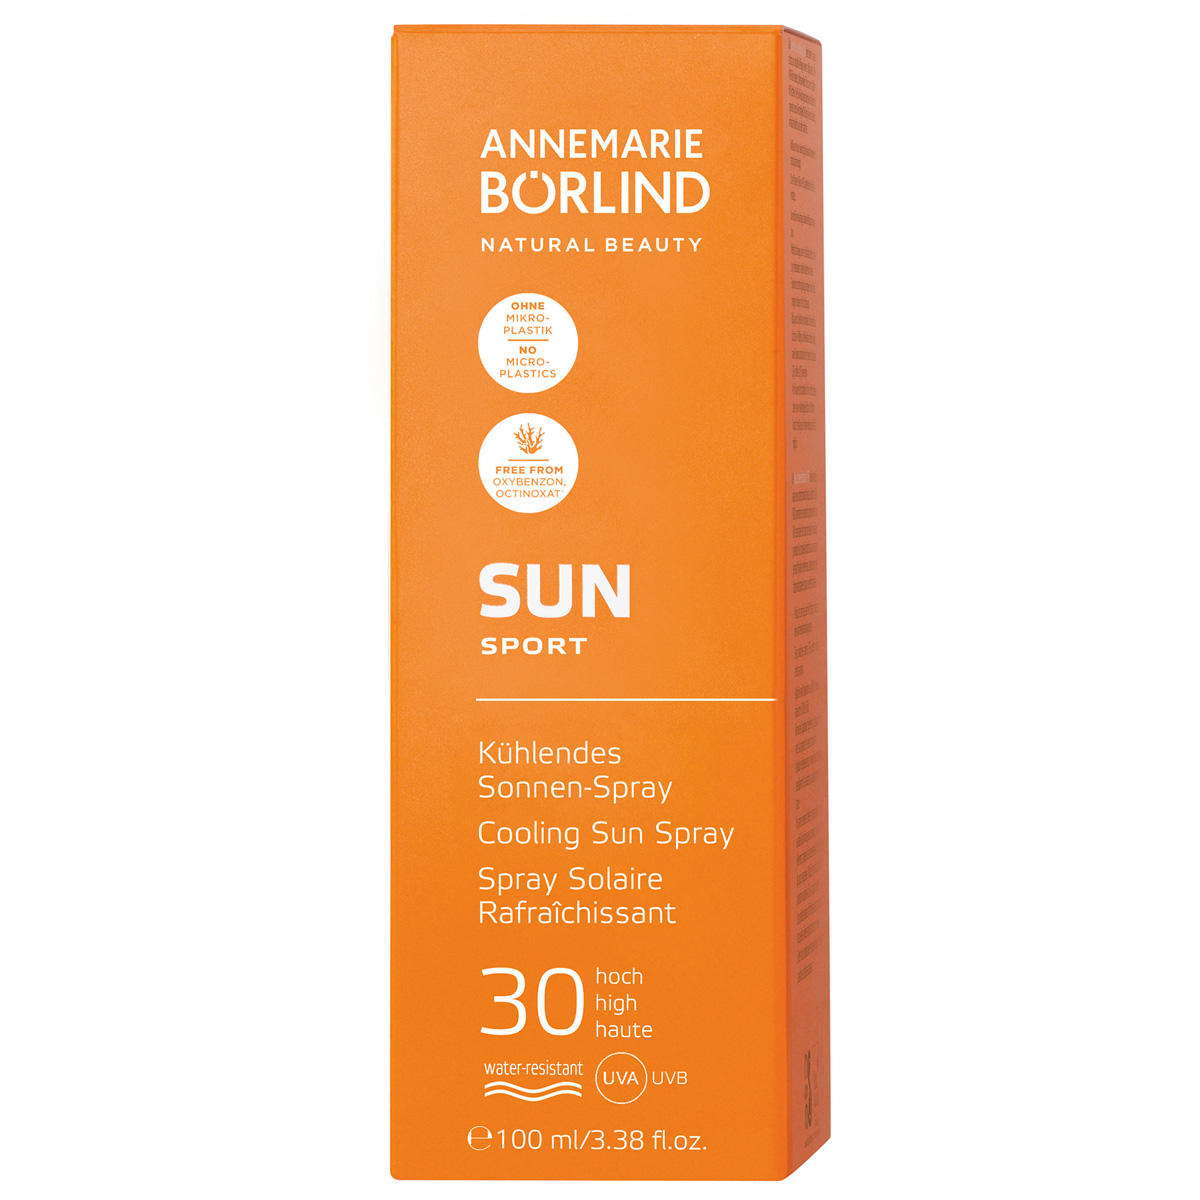 ANNEMARIE BÖRLIND SUN SPORT Kühlendes Sonnen-Spray LSF 30 100 ml - 2